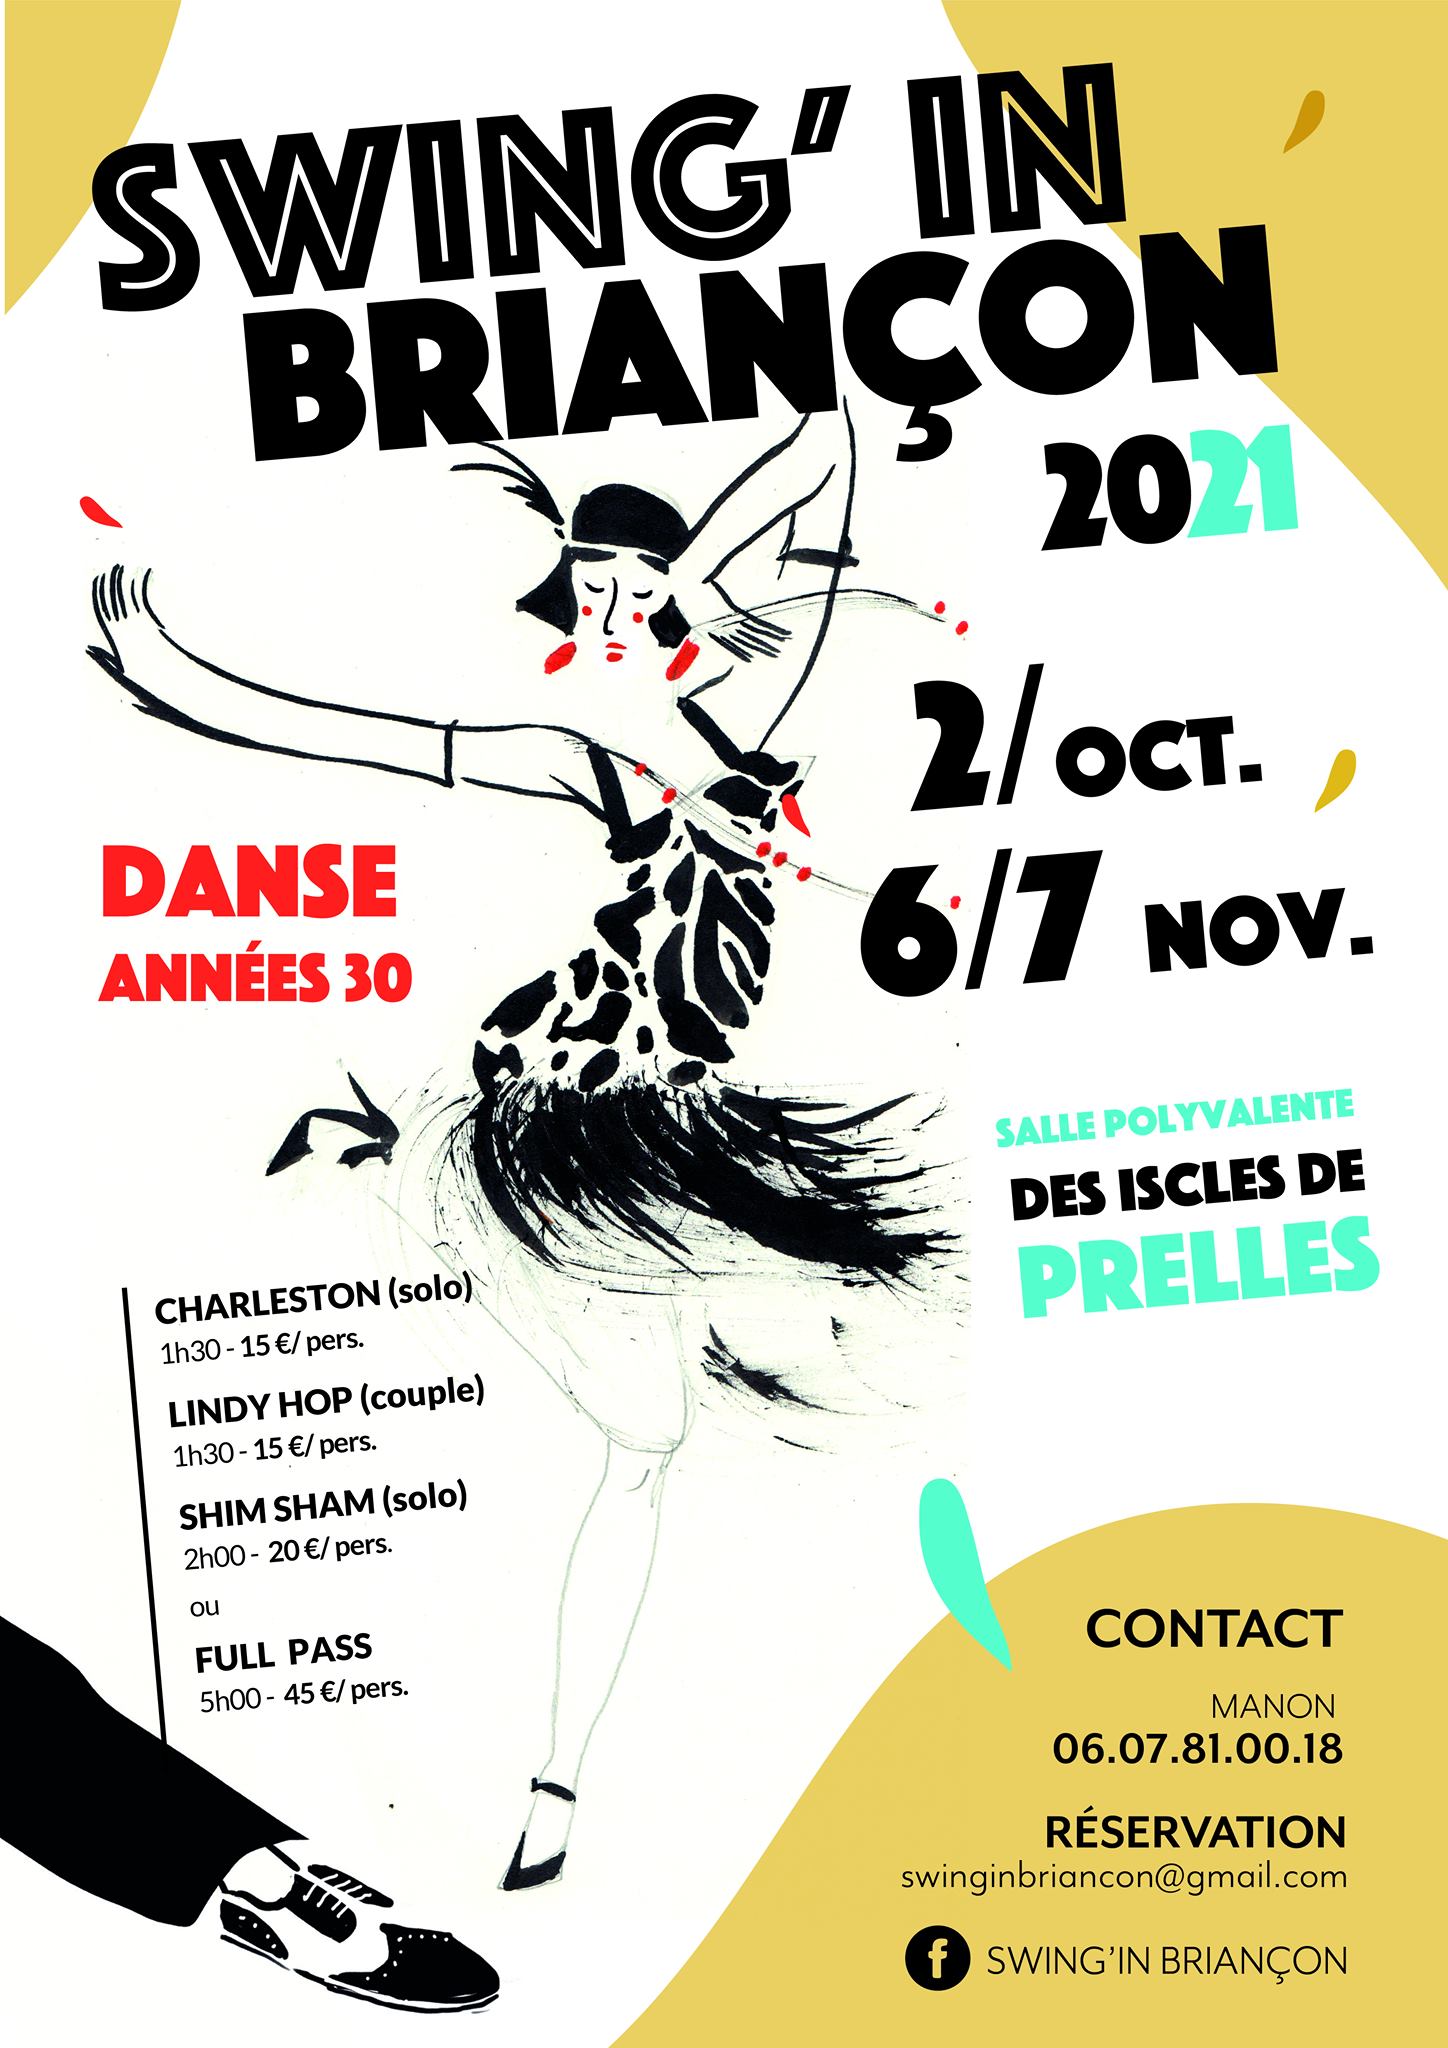 Swing in Briançon le 6 et 7 novembre prochain